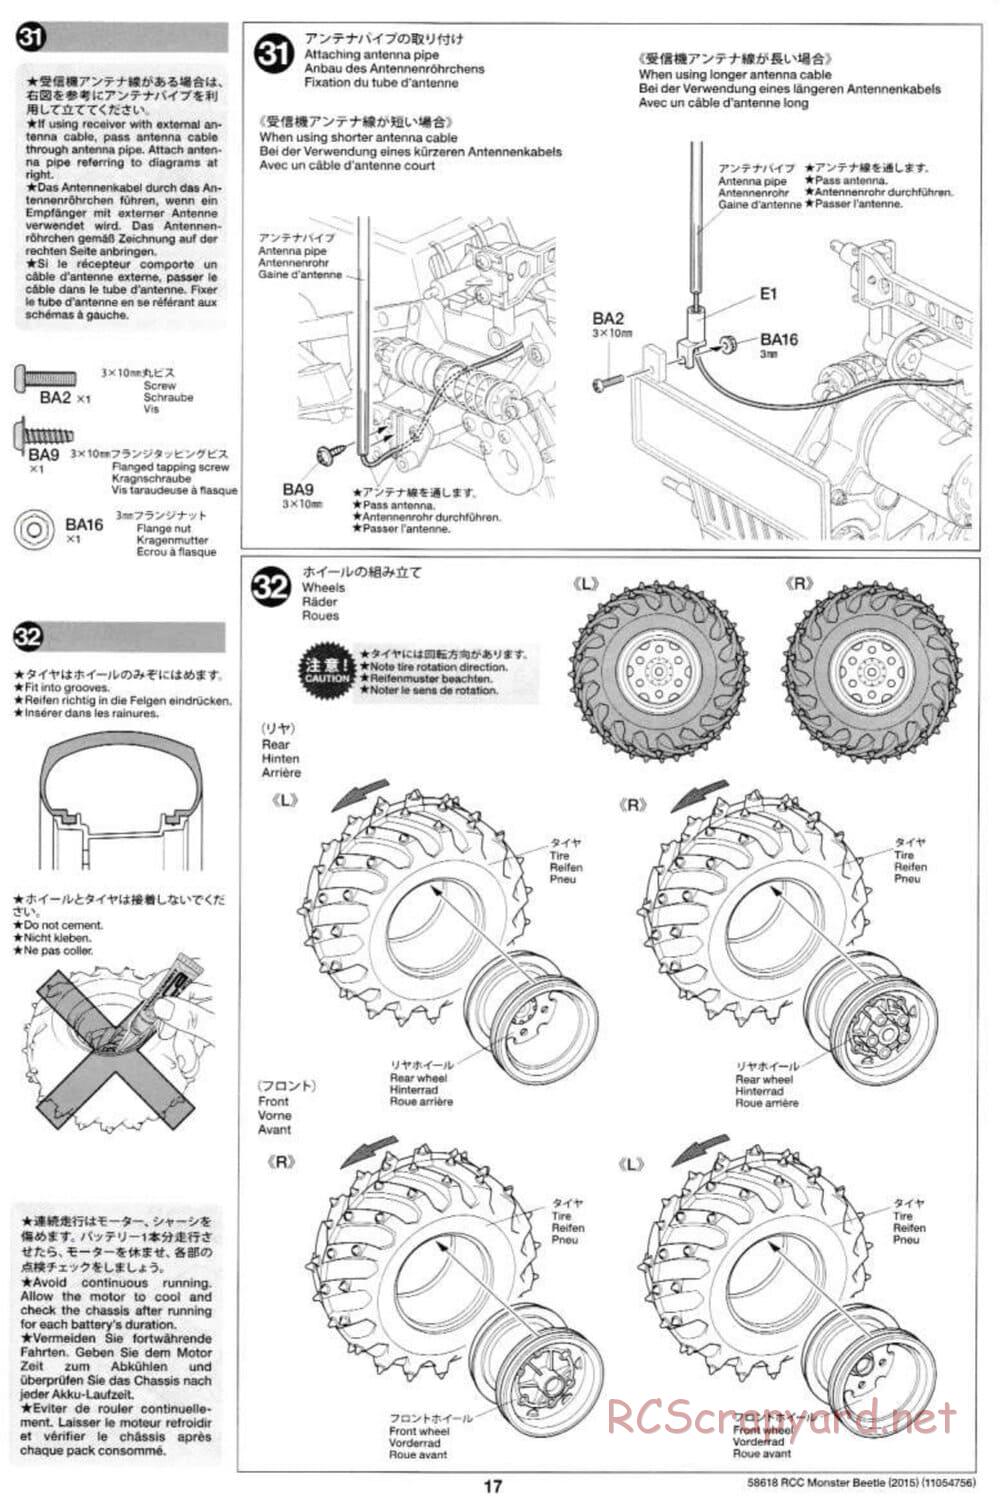 Tamiya - Monster Beetle 2015 - ORV Chassis - Manual - Page 17